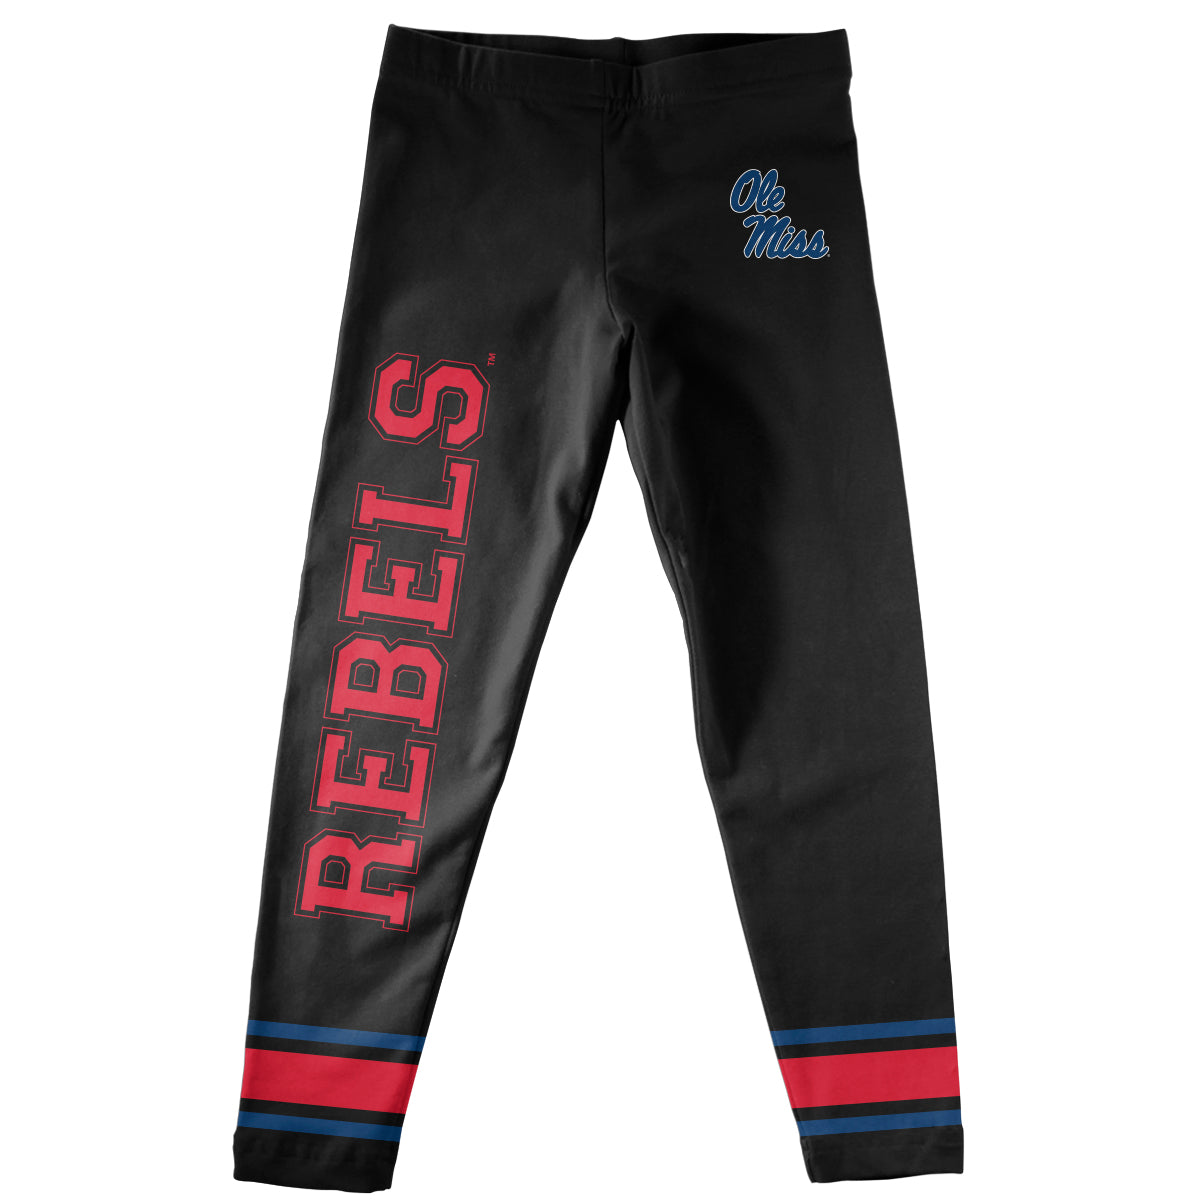 Mississippi Rebels Verbiage And Logo Black Stripes Leggings